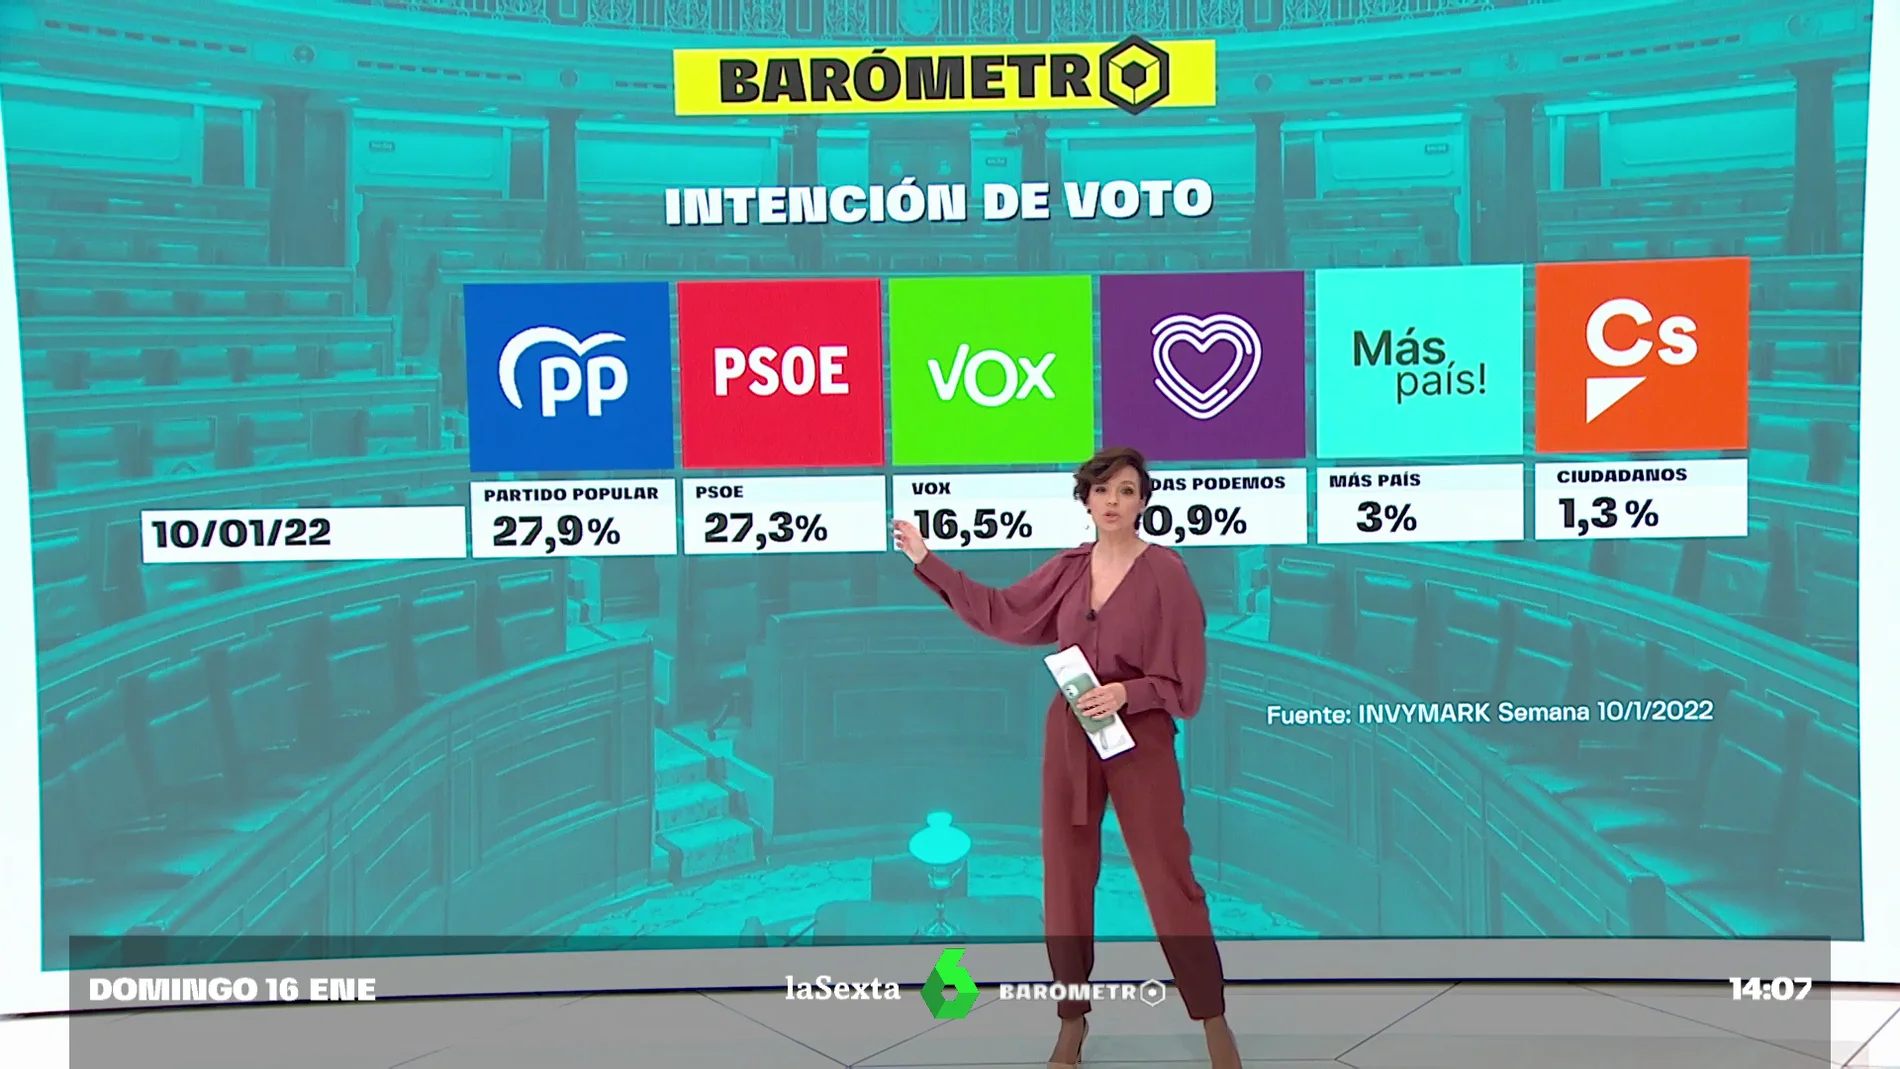 Barómetro laSexta | Tablas entre PSOE y PP en intención de voto